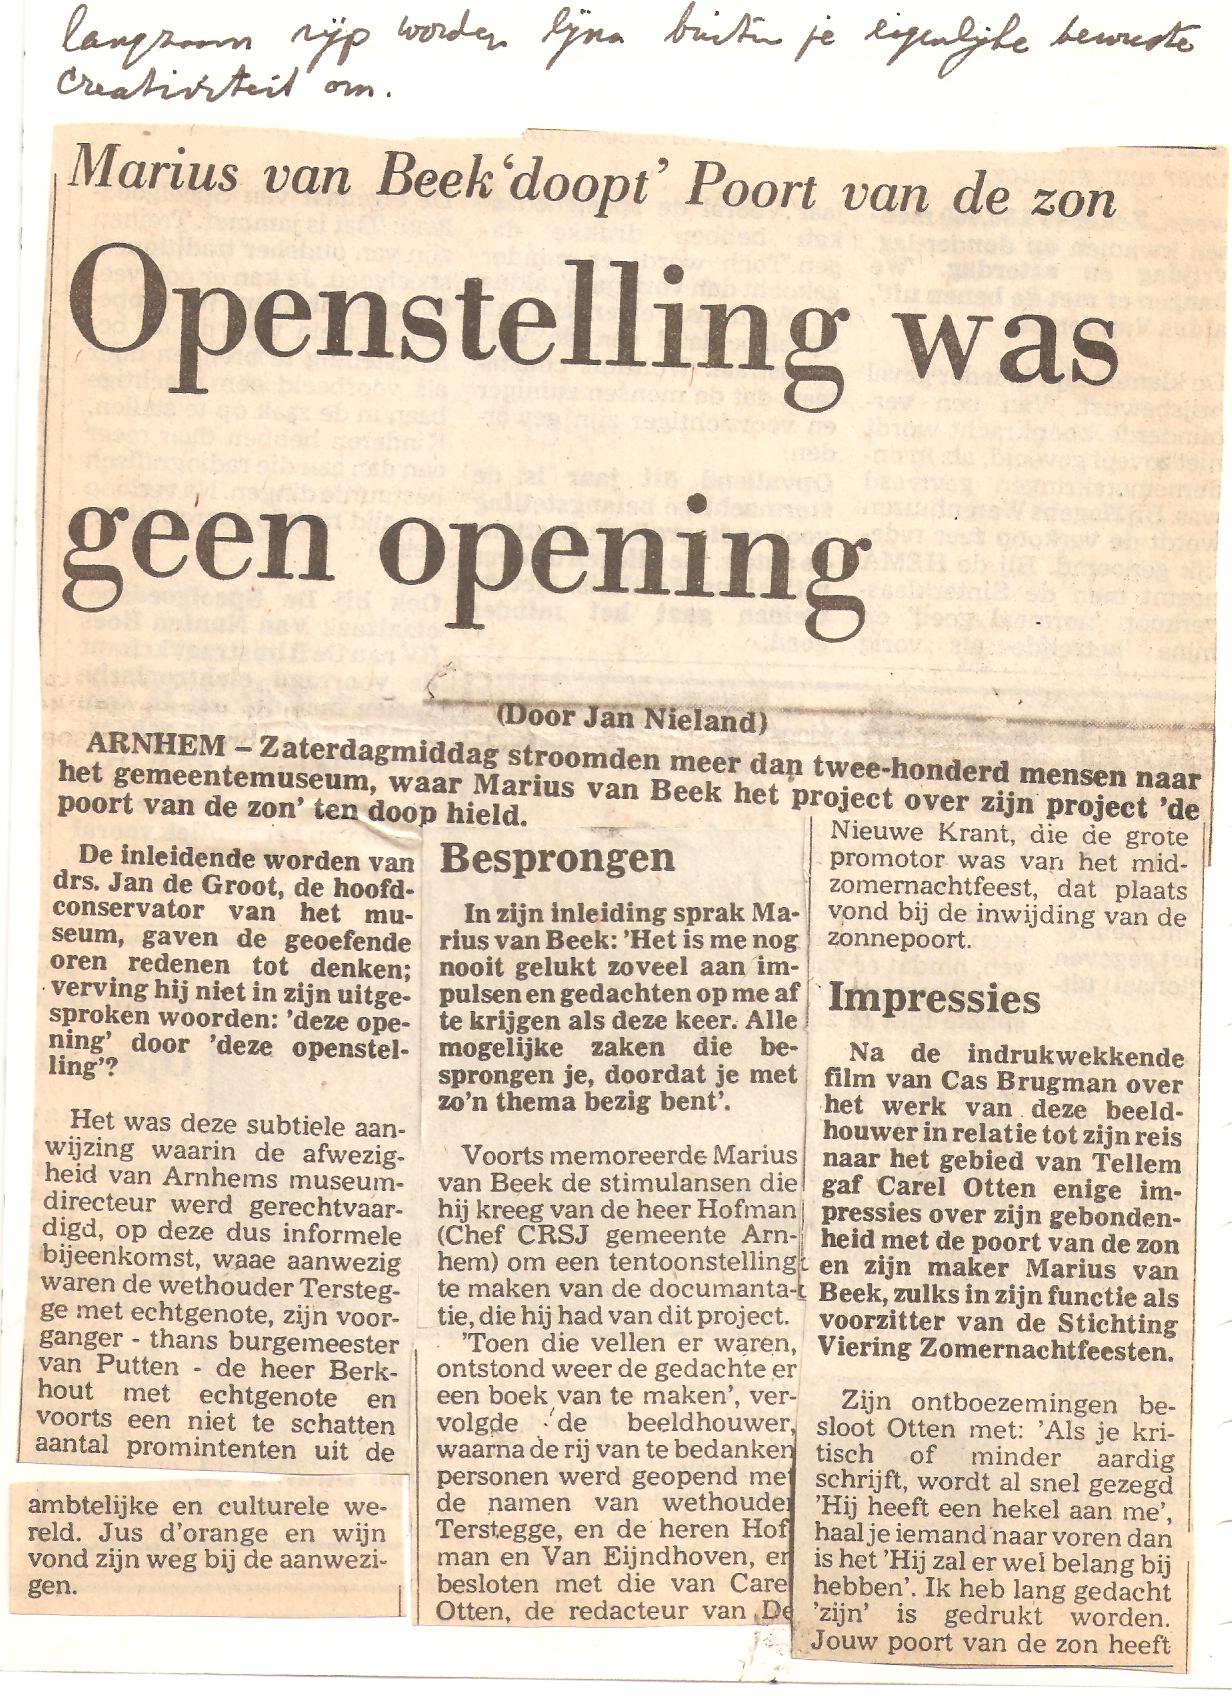 Opening in Gemeente Museum Arnhem (artikel)